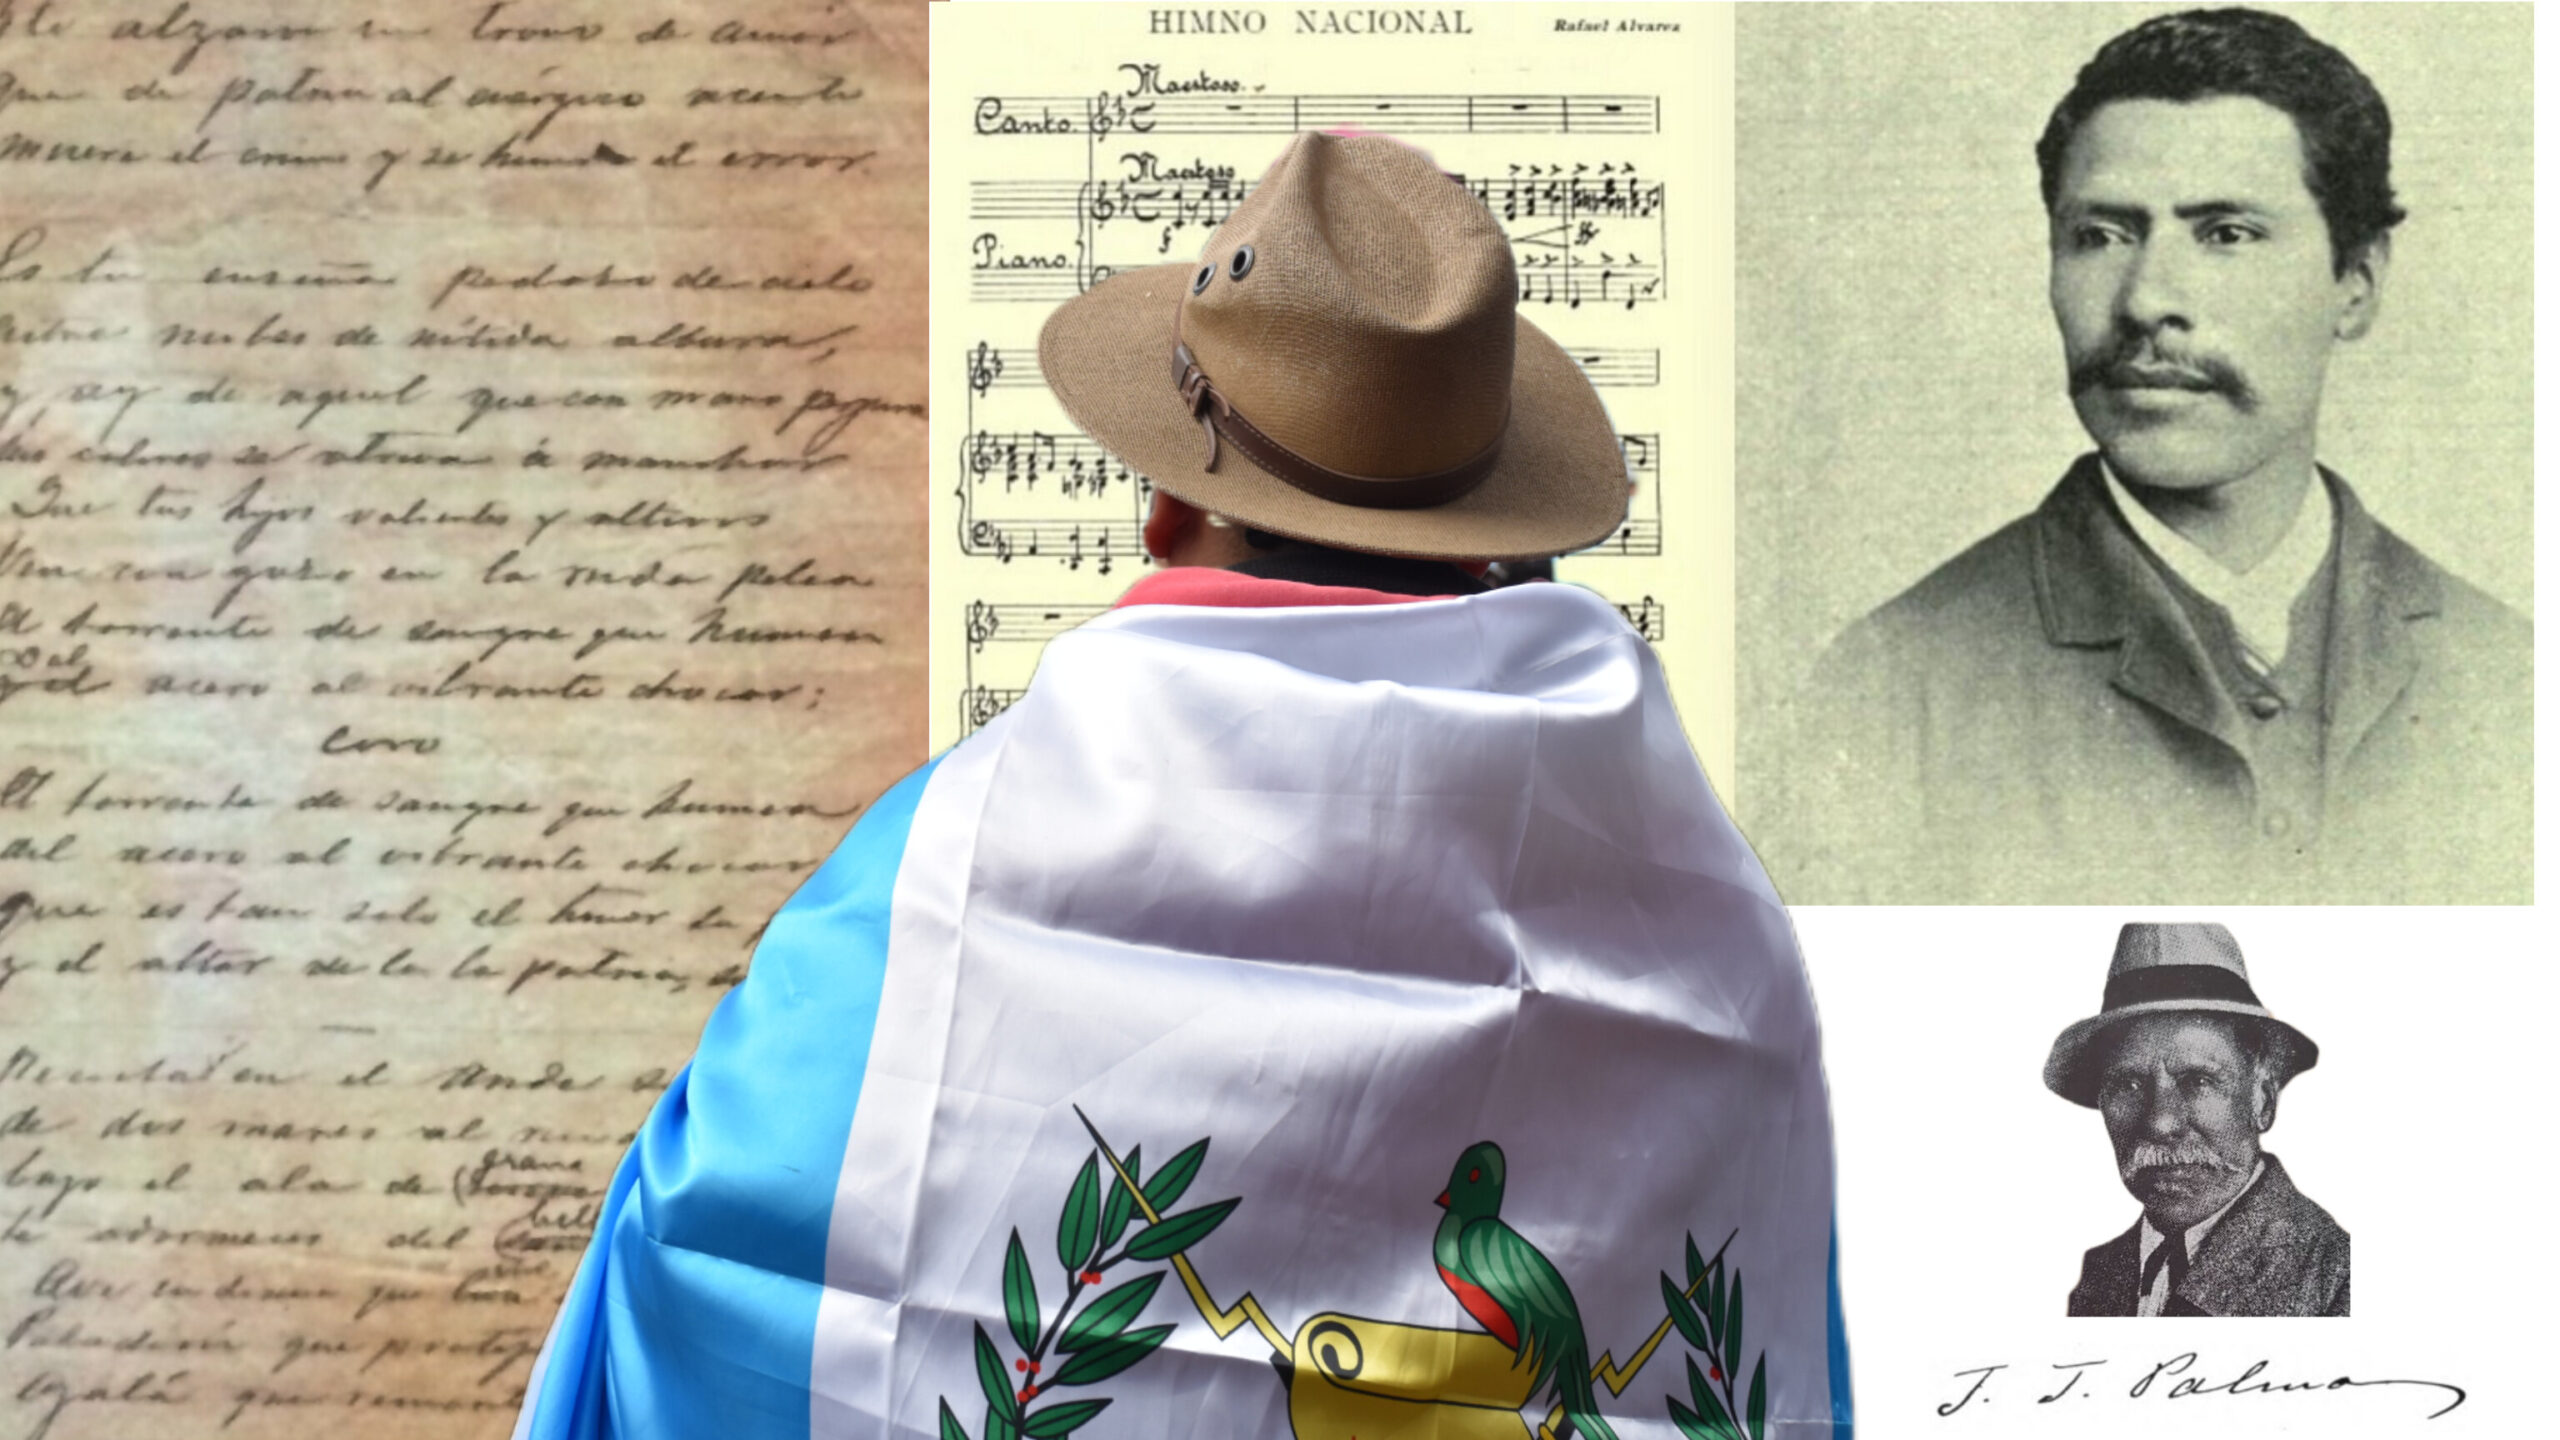 Himno Nacional de Guatemala: 6 fechas claves que todo migrante debe conocer